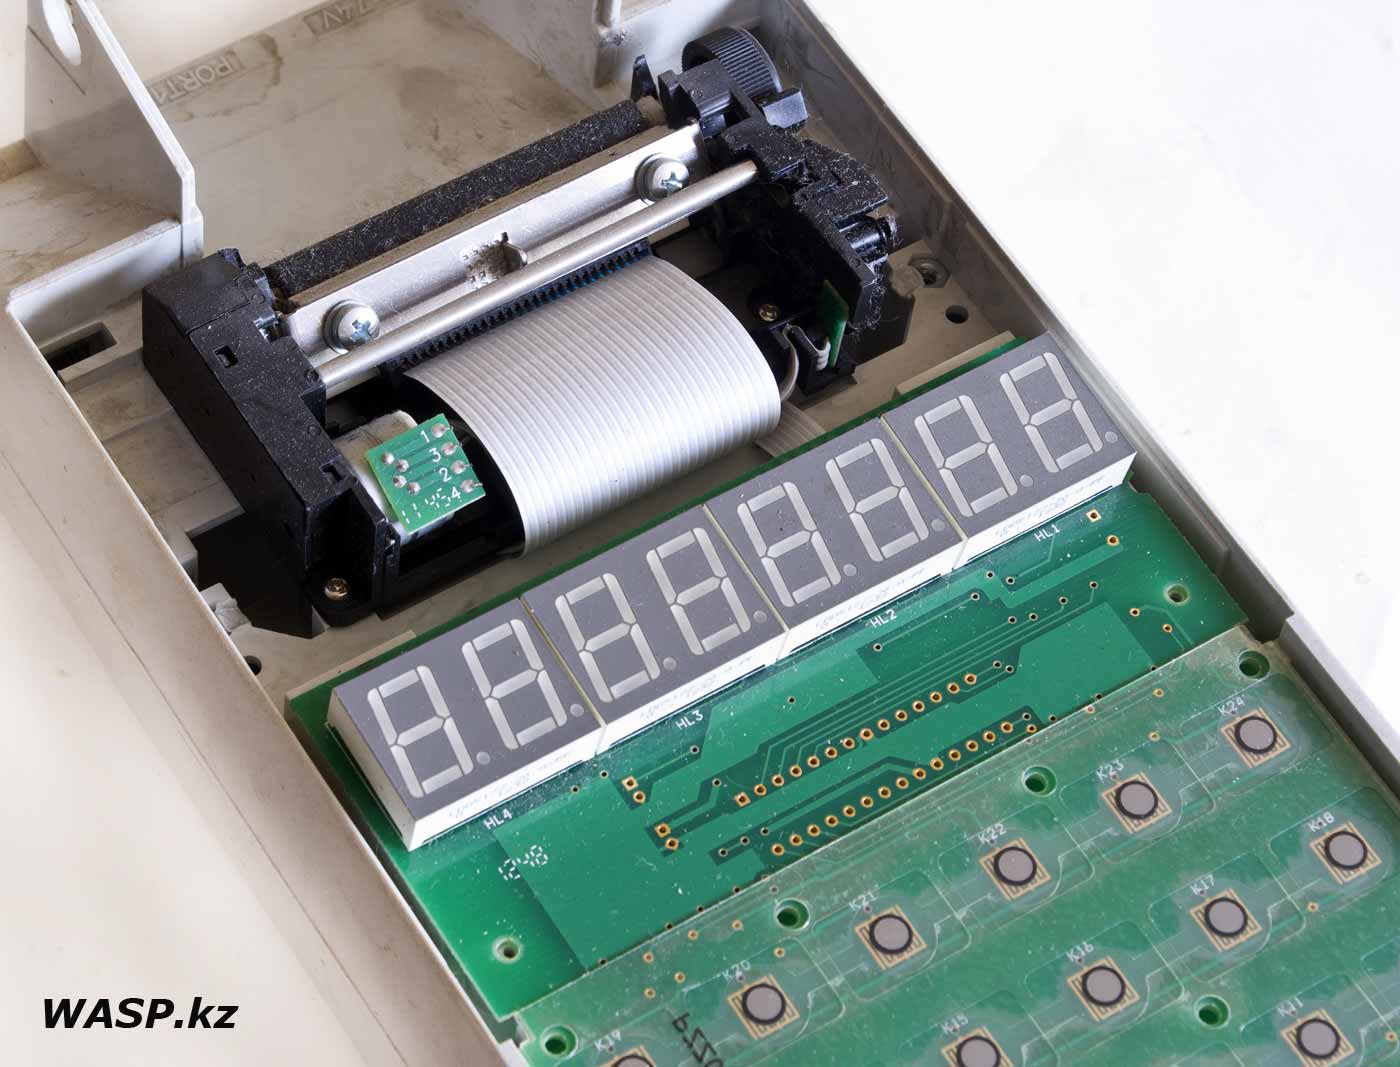 Меркурий-115ФKZ очитстка клавиатуры и принтера, как разобрать